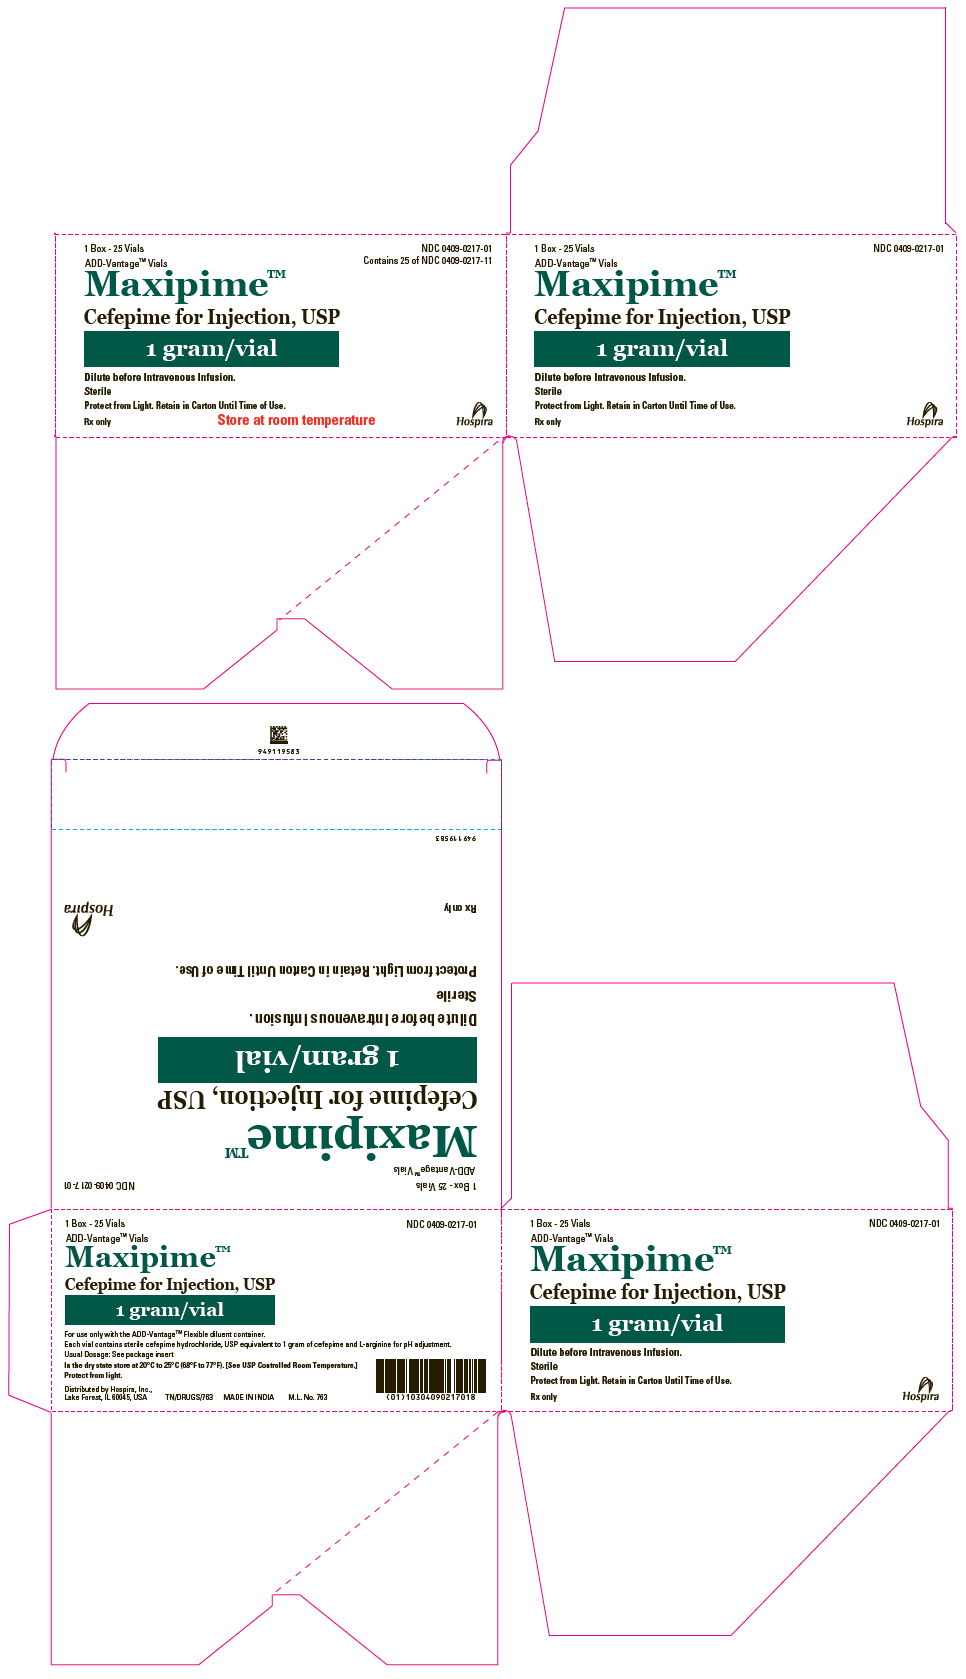 PRINCIPAL DISPLAY PANEL - 1 gram ADD-Vantage Vial Carton